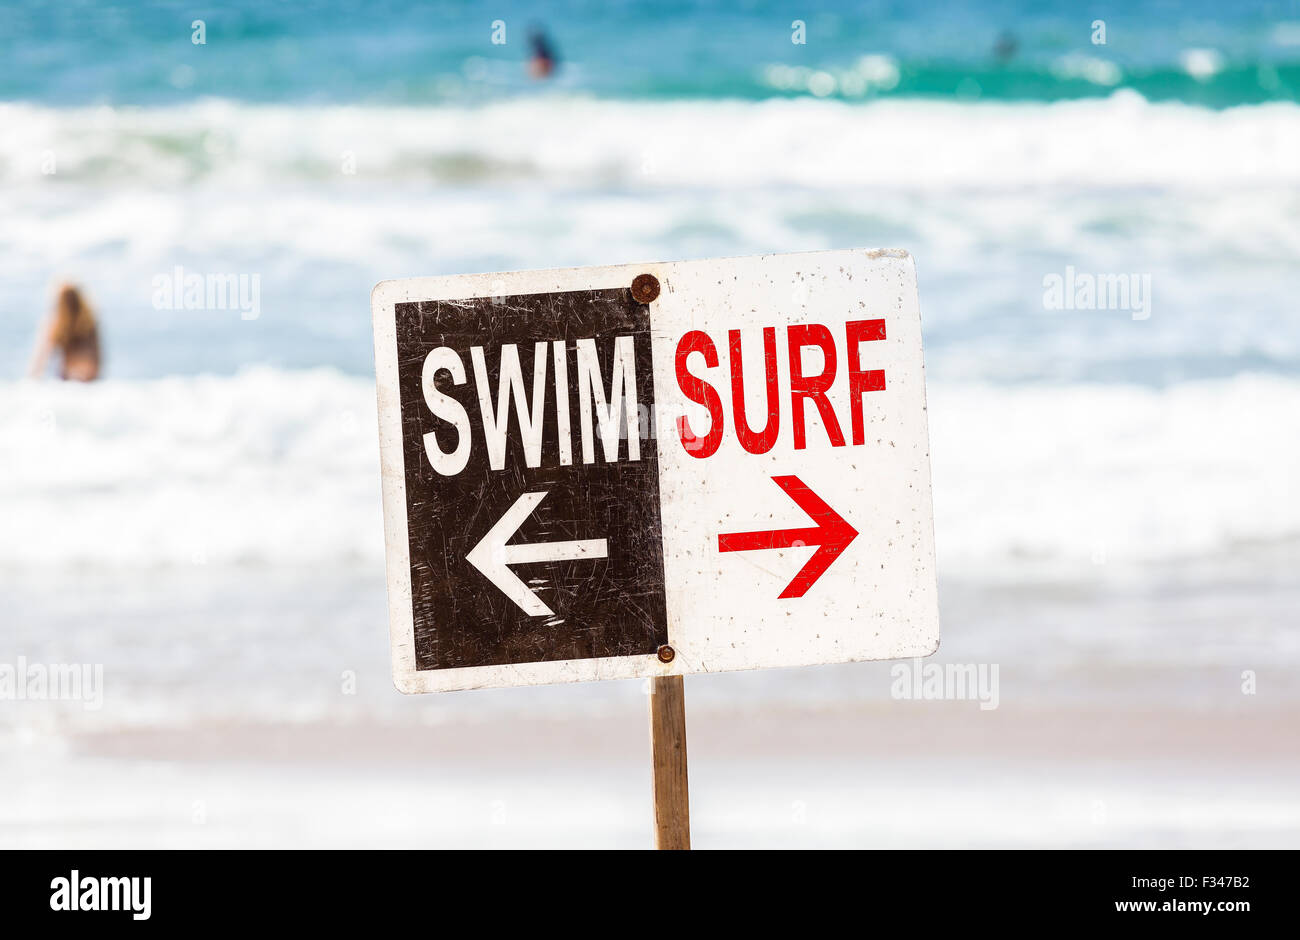 Nuotare e fare surf segno sulla spiaggia, profondità di campo, vacanze estive concetto, Venice Beach in California, Stati Uniti d'America. Foto Stock